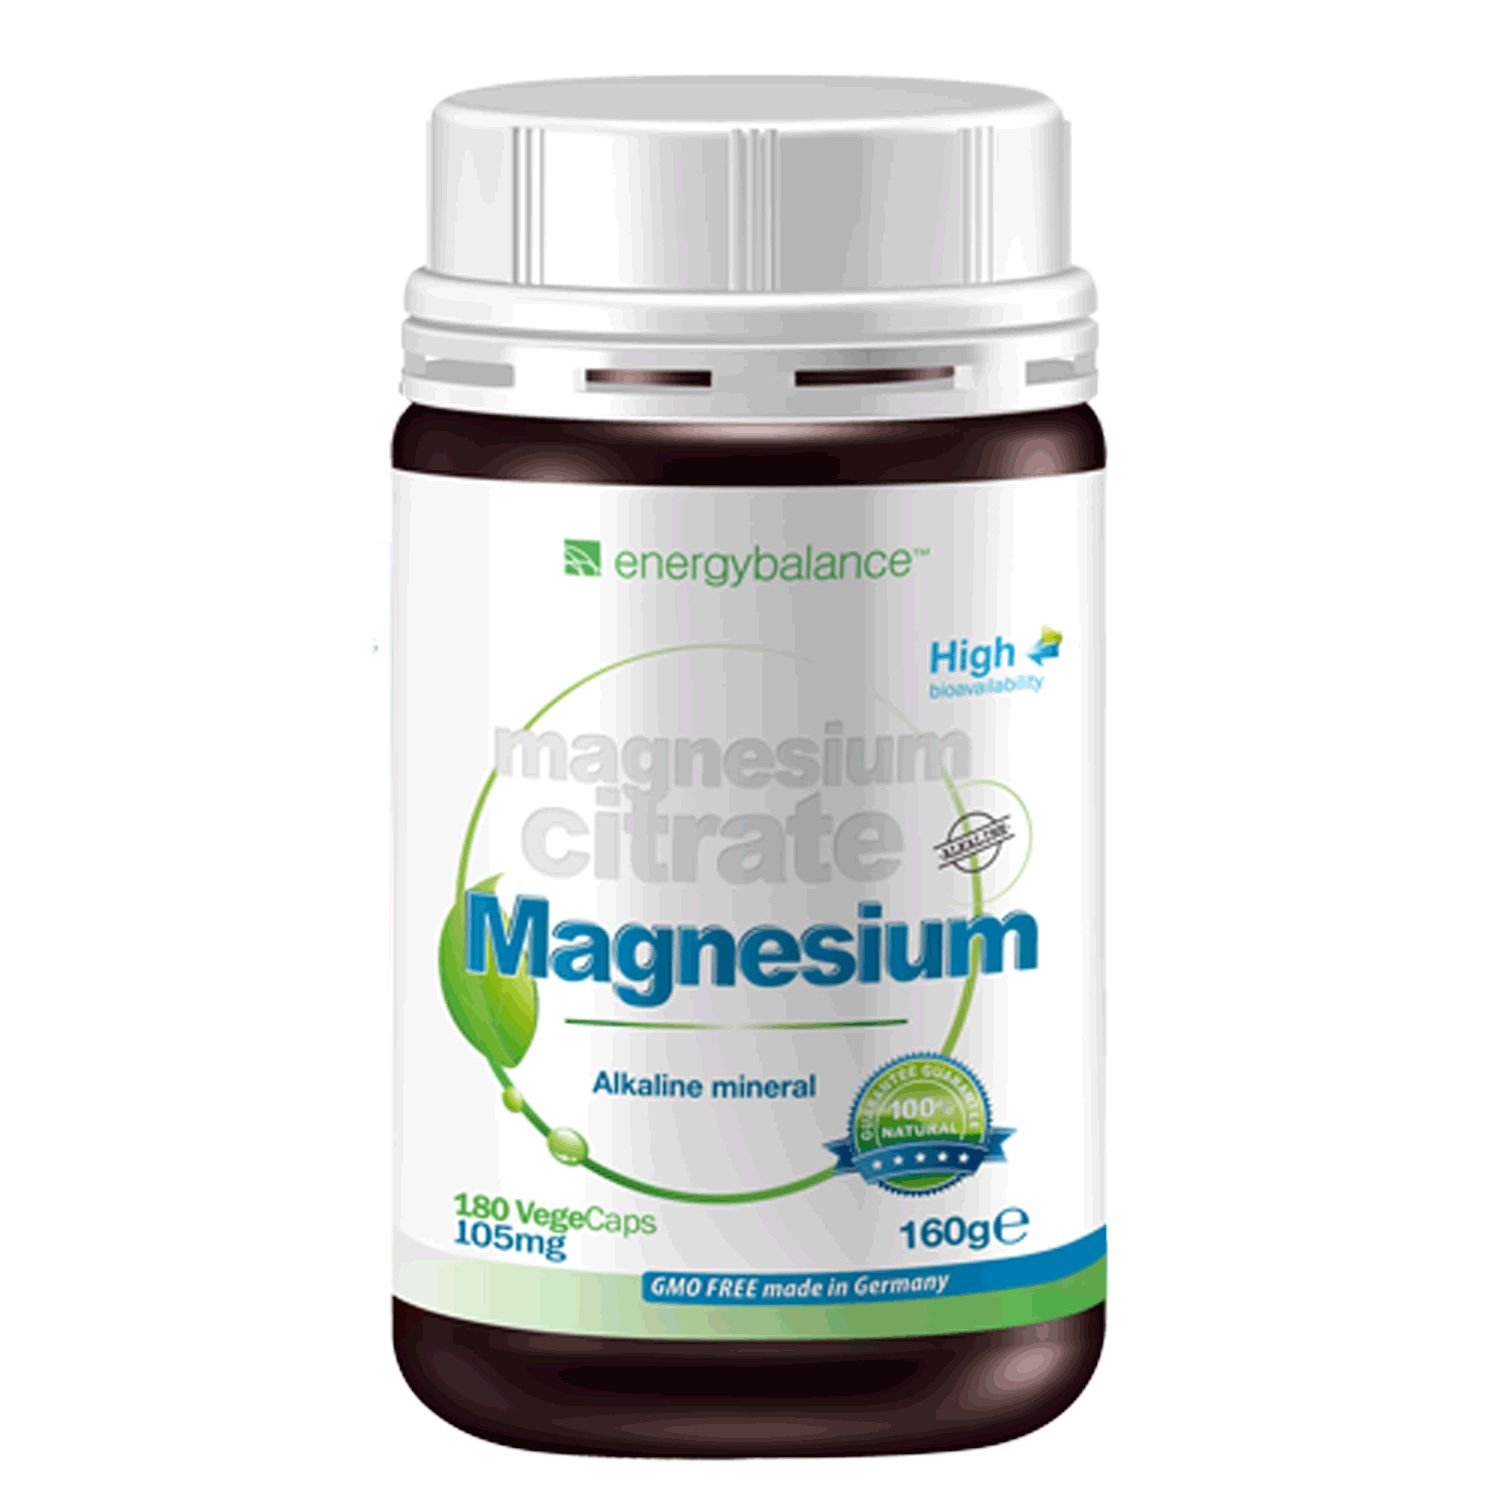 Magnesium-Citrate 145mg - 100% rein Ohne Zusatzstoffe - Hohe Bioverfügbarkeit - Glutenfrei - Vegan - GVO-frei - Premiumqualität aus Deutschland - 180 VegeCaps